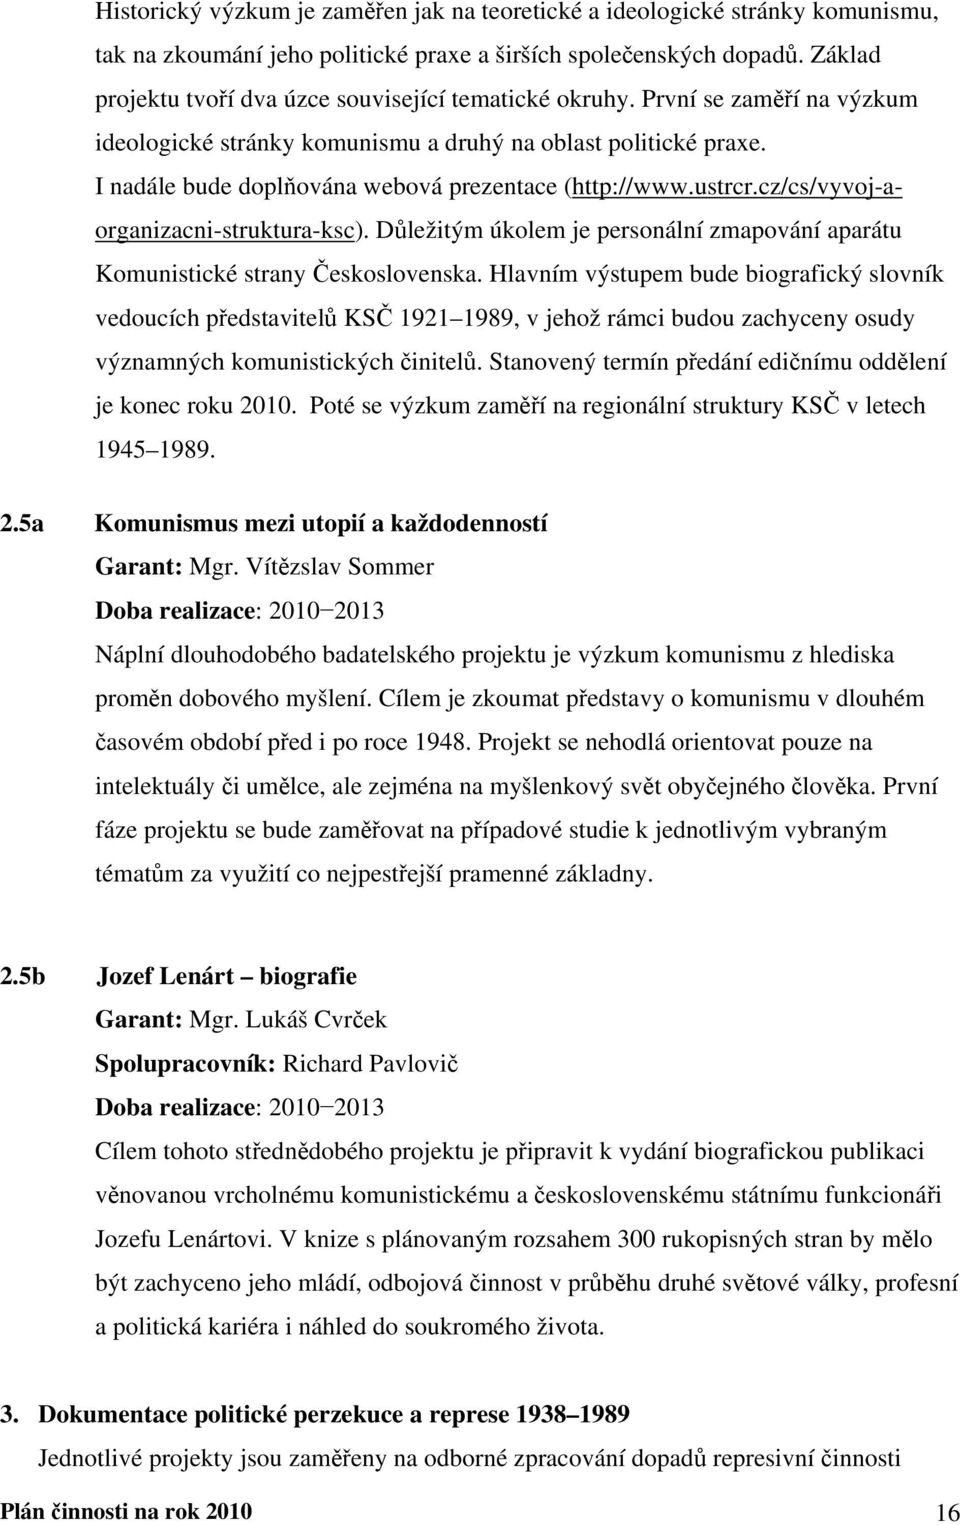 I nadále bude doplňována webová prezentace (http://www.ustrcr.cz/cs/vyvoj-aorganizacni-struktura-ksc). Důležitým úkolem je personální zmapování aparátu Komunistické strany Československa.